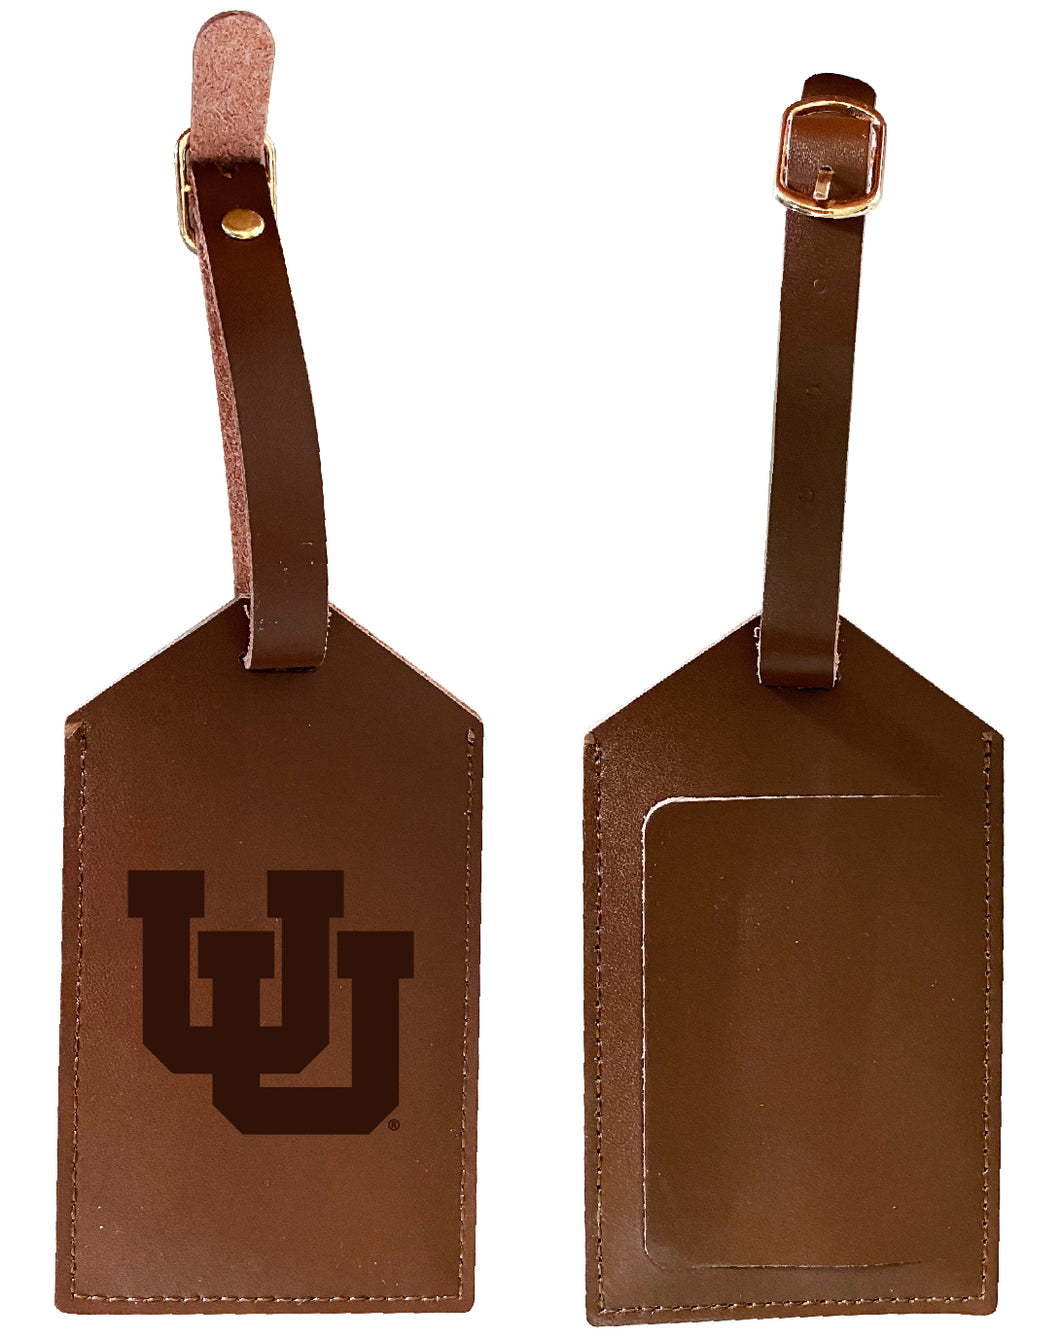 Elegant Utah Utes NCAA Leather Luggage Tag with Engraved Logo